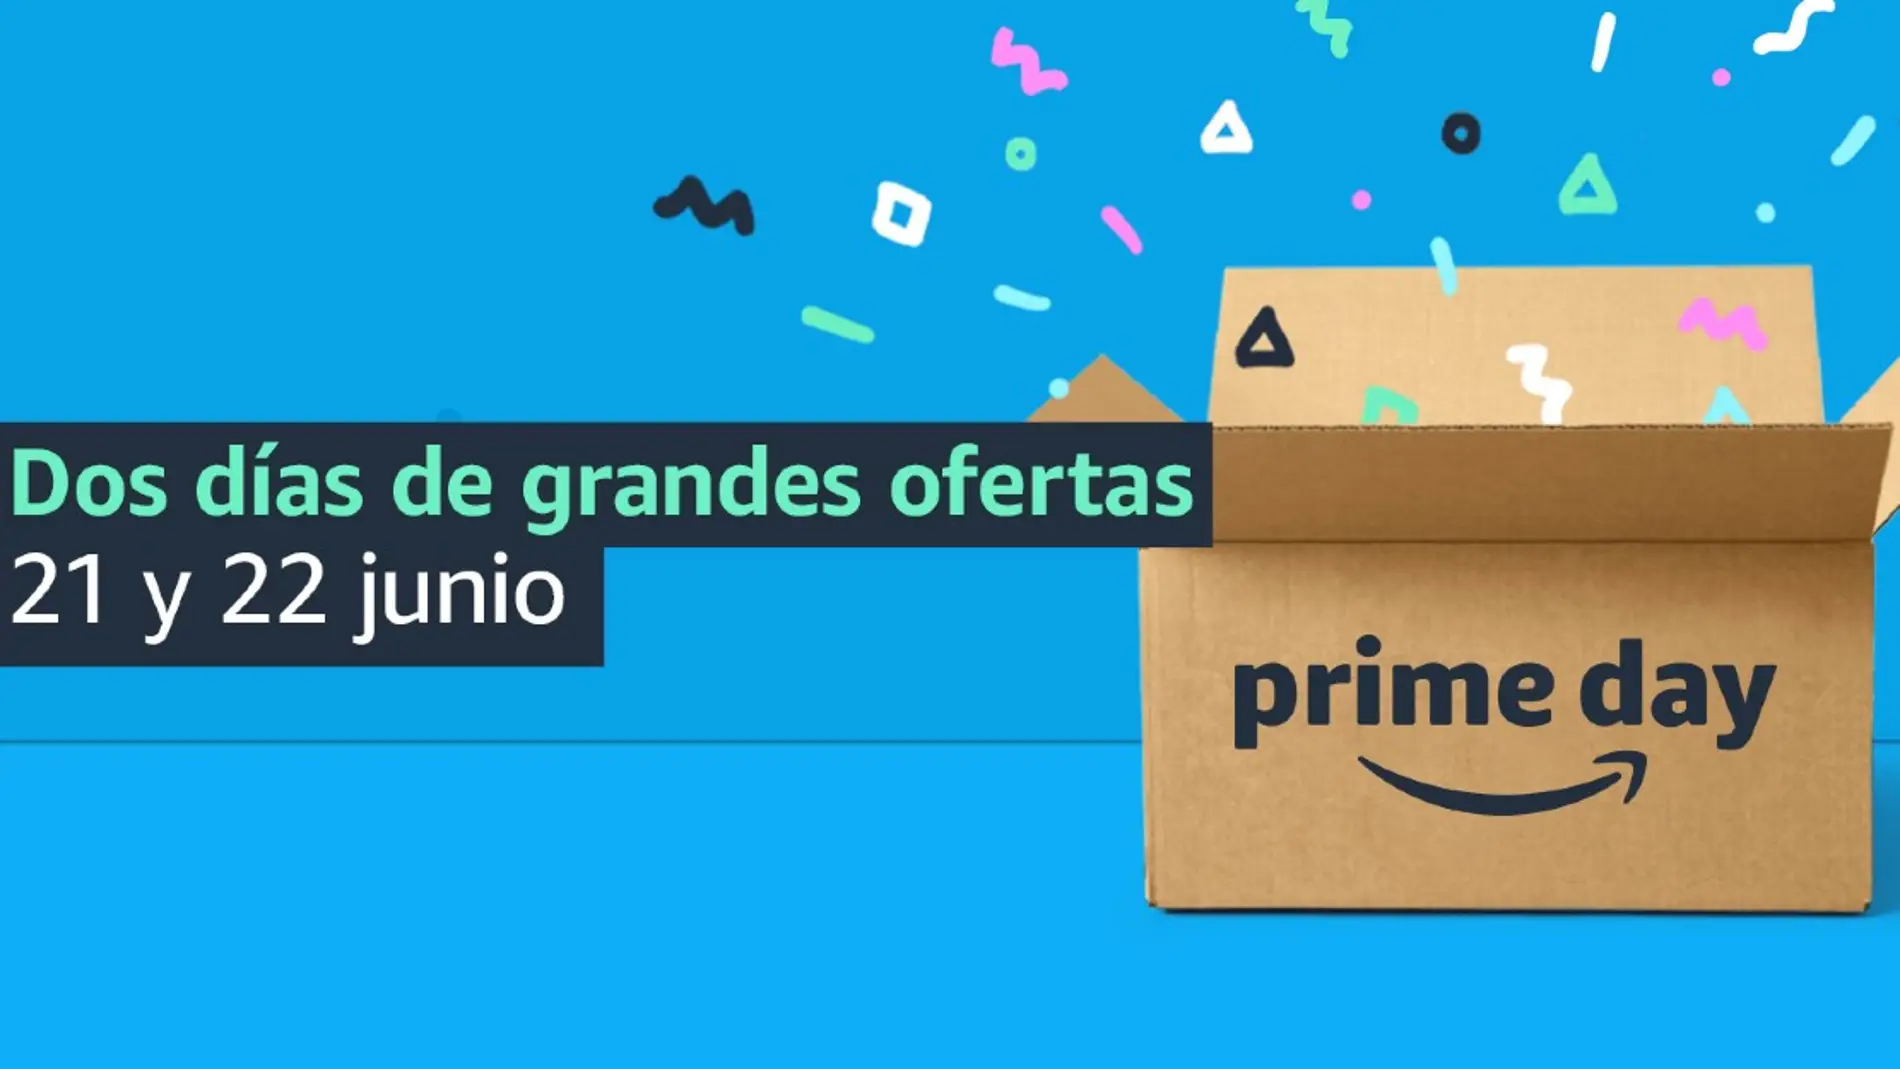 Las mejores ofertas del Amazon Prime Day 2021 con más de un 40% de descuento